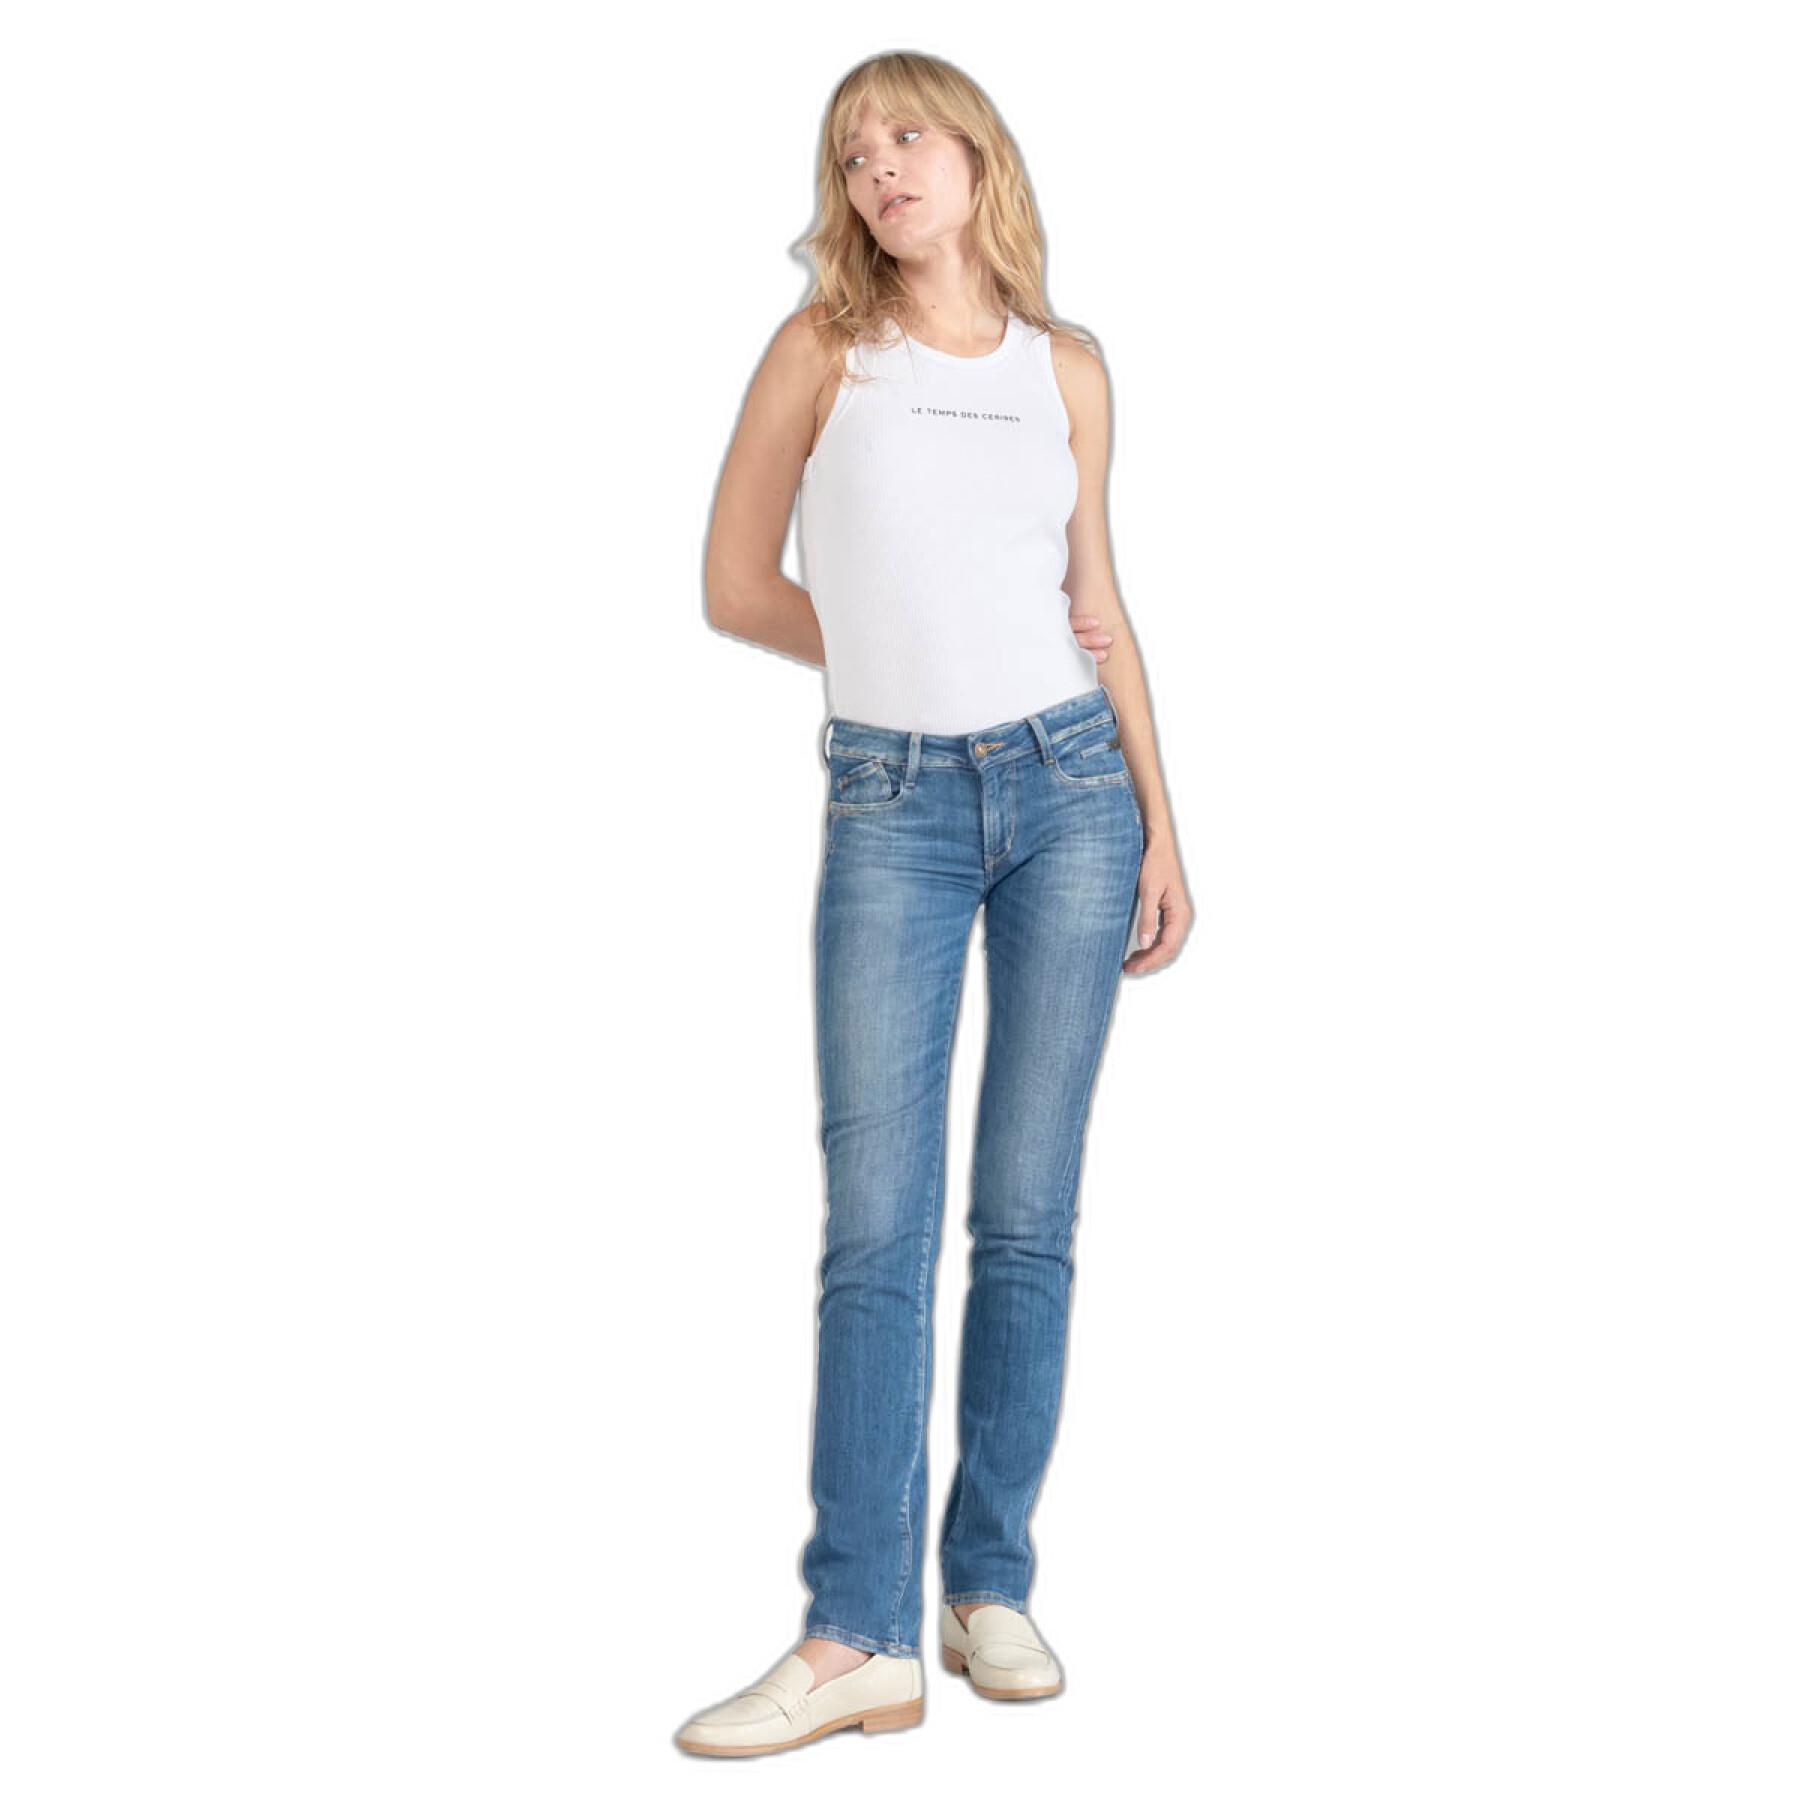 Jeans women's pocket Le Temps des cerises Cosy